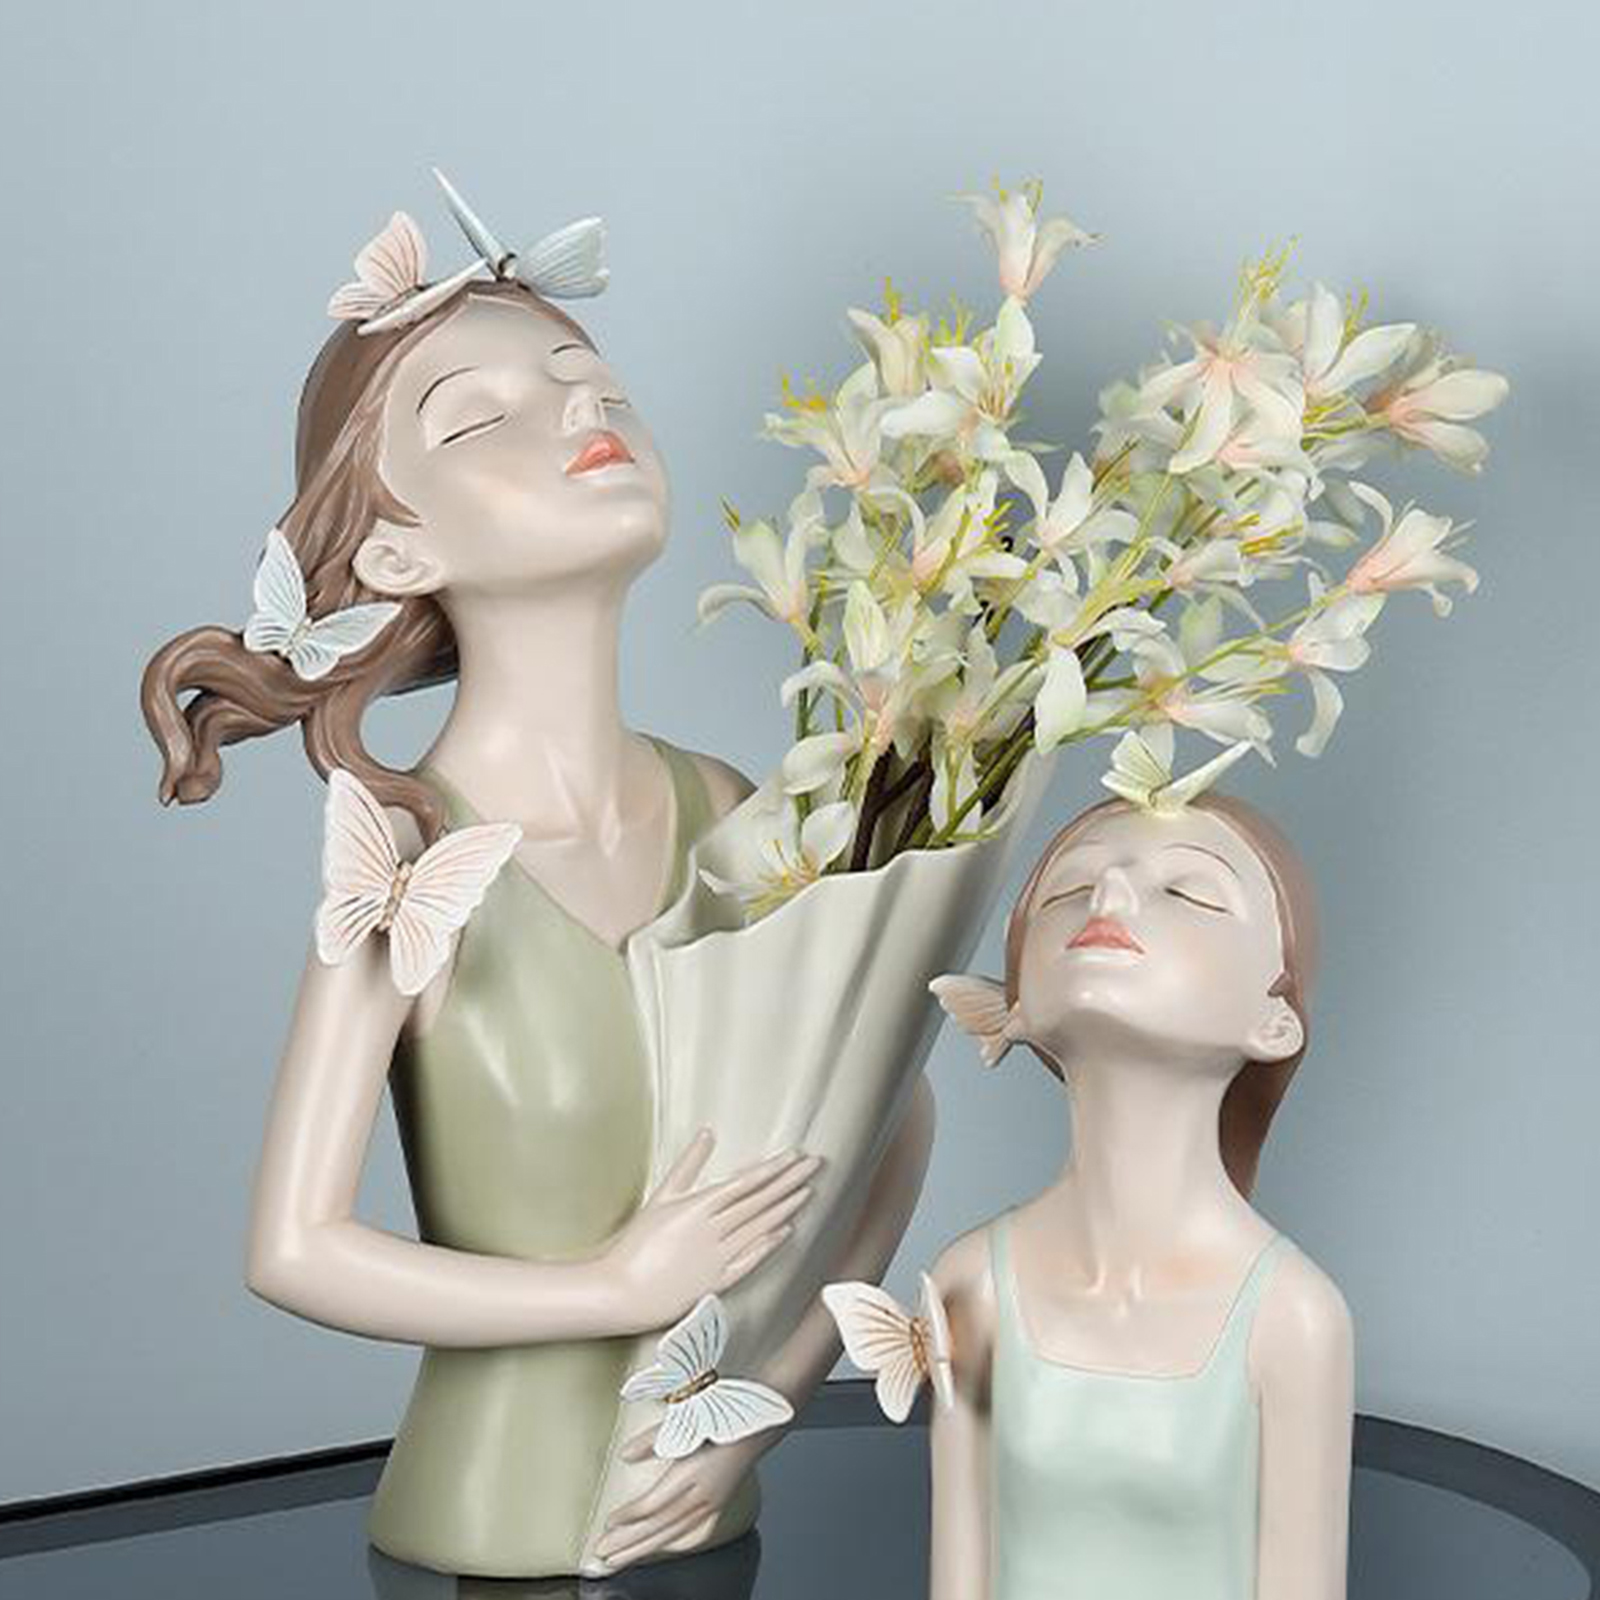 Bình hoa cô gái Tượng bình hoa cô gái Benzaiten bằng nhựa Plastic cao cấp nhiều kiểu dáng, giá siêu rẻ - F20Beauty - Phong cách hiện đại